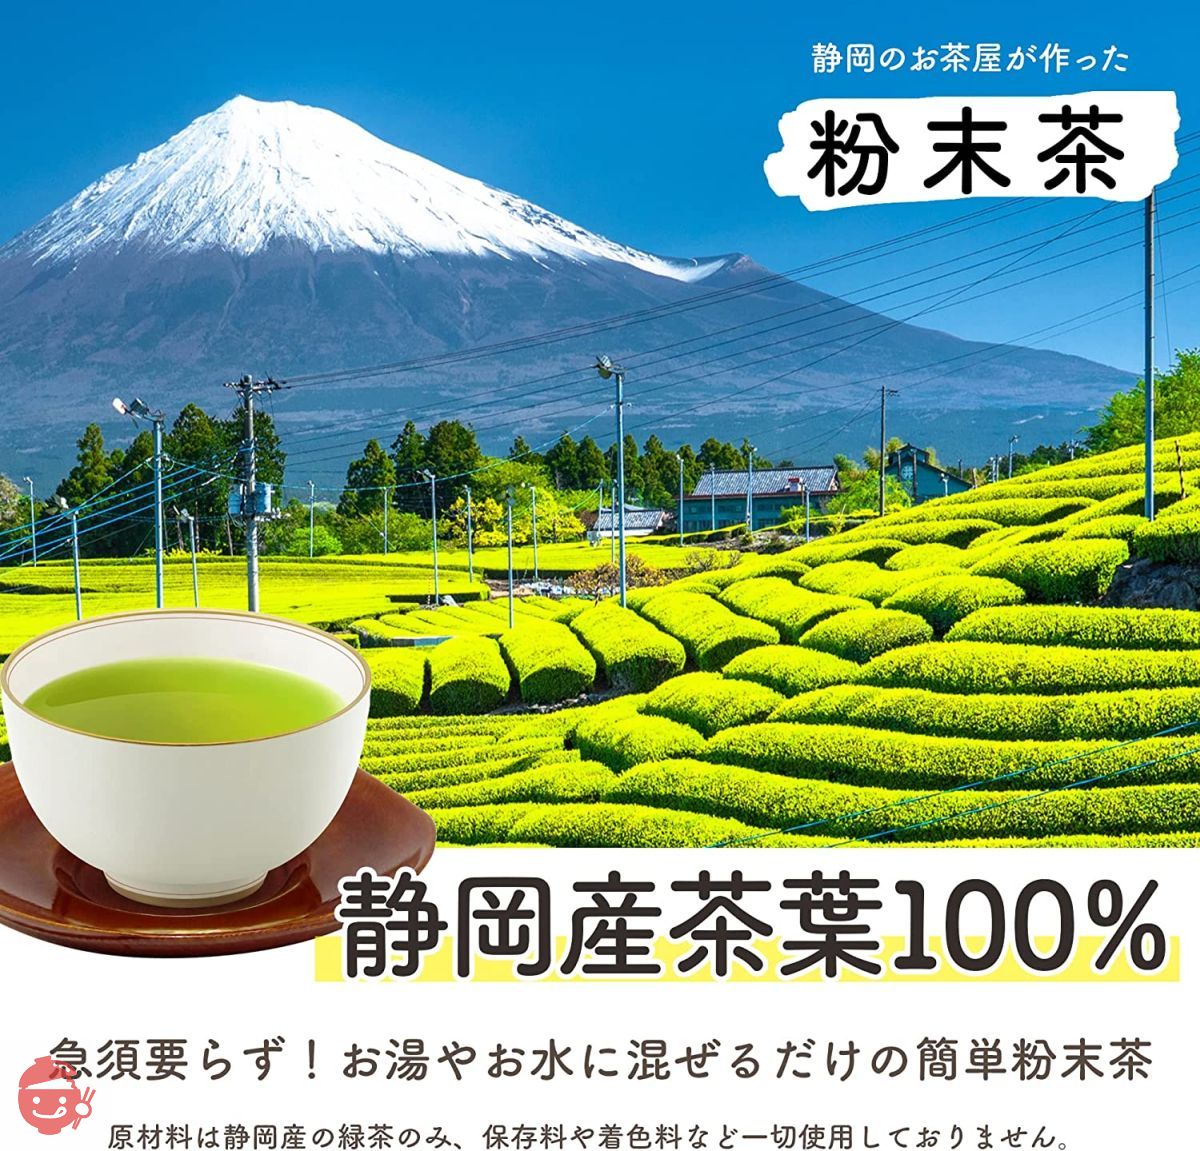 新罗哈田静冈茶屋制造的茶粉绿茶100g x 2 袋日本茶国产低咖啡因